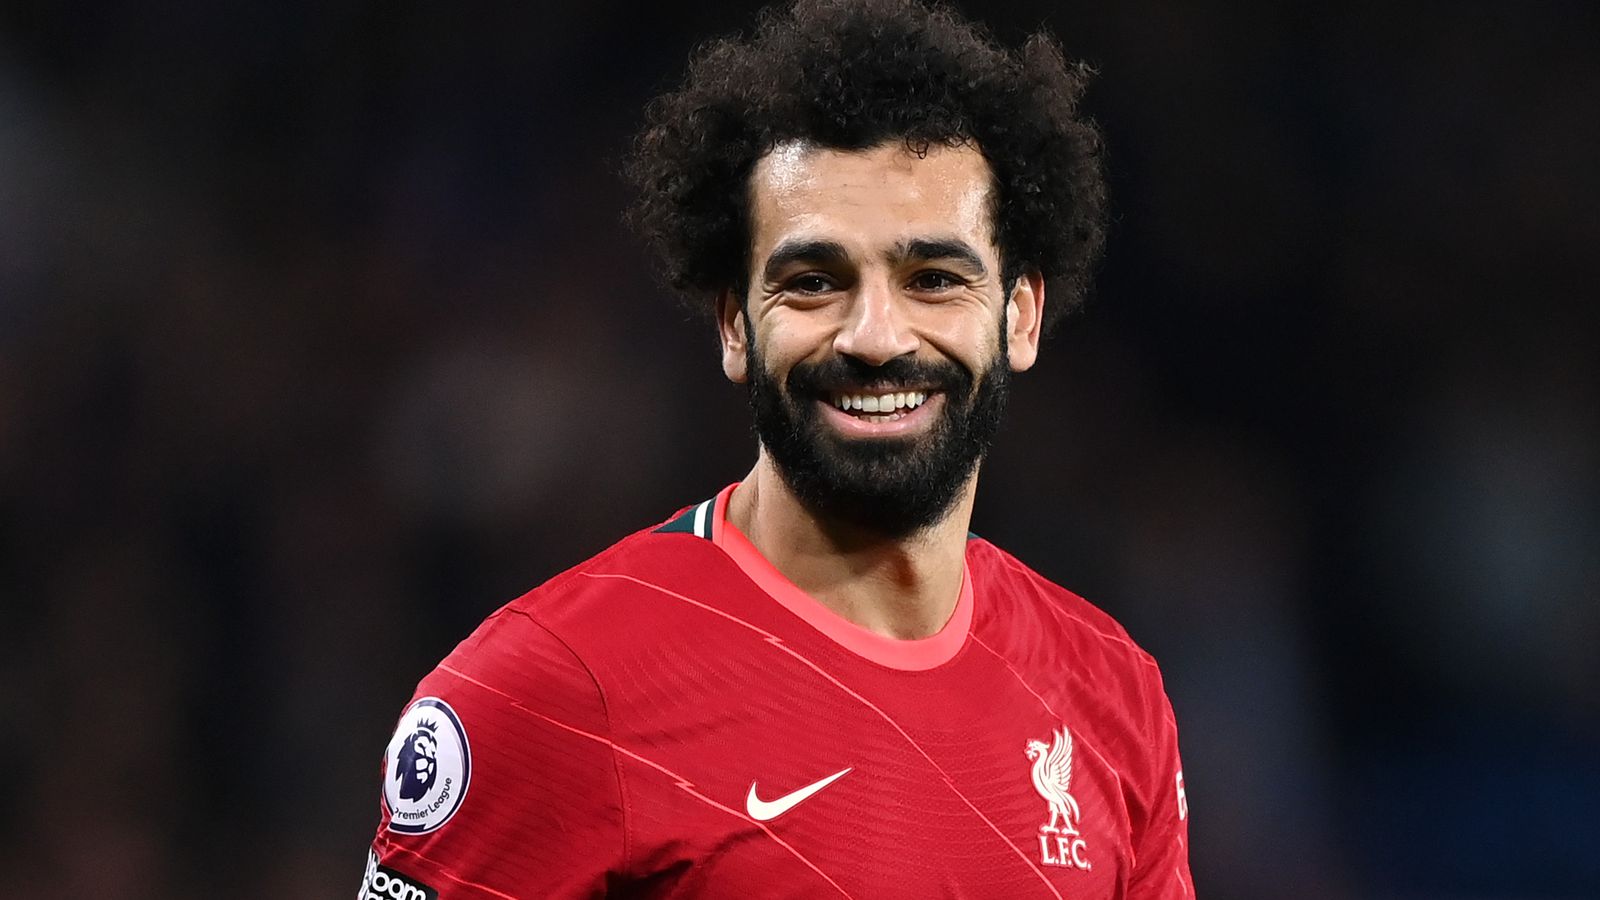 Salah vô cùng xuất sắc - RM trong bóng đá là gì?